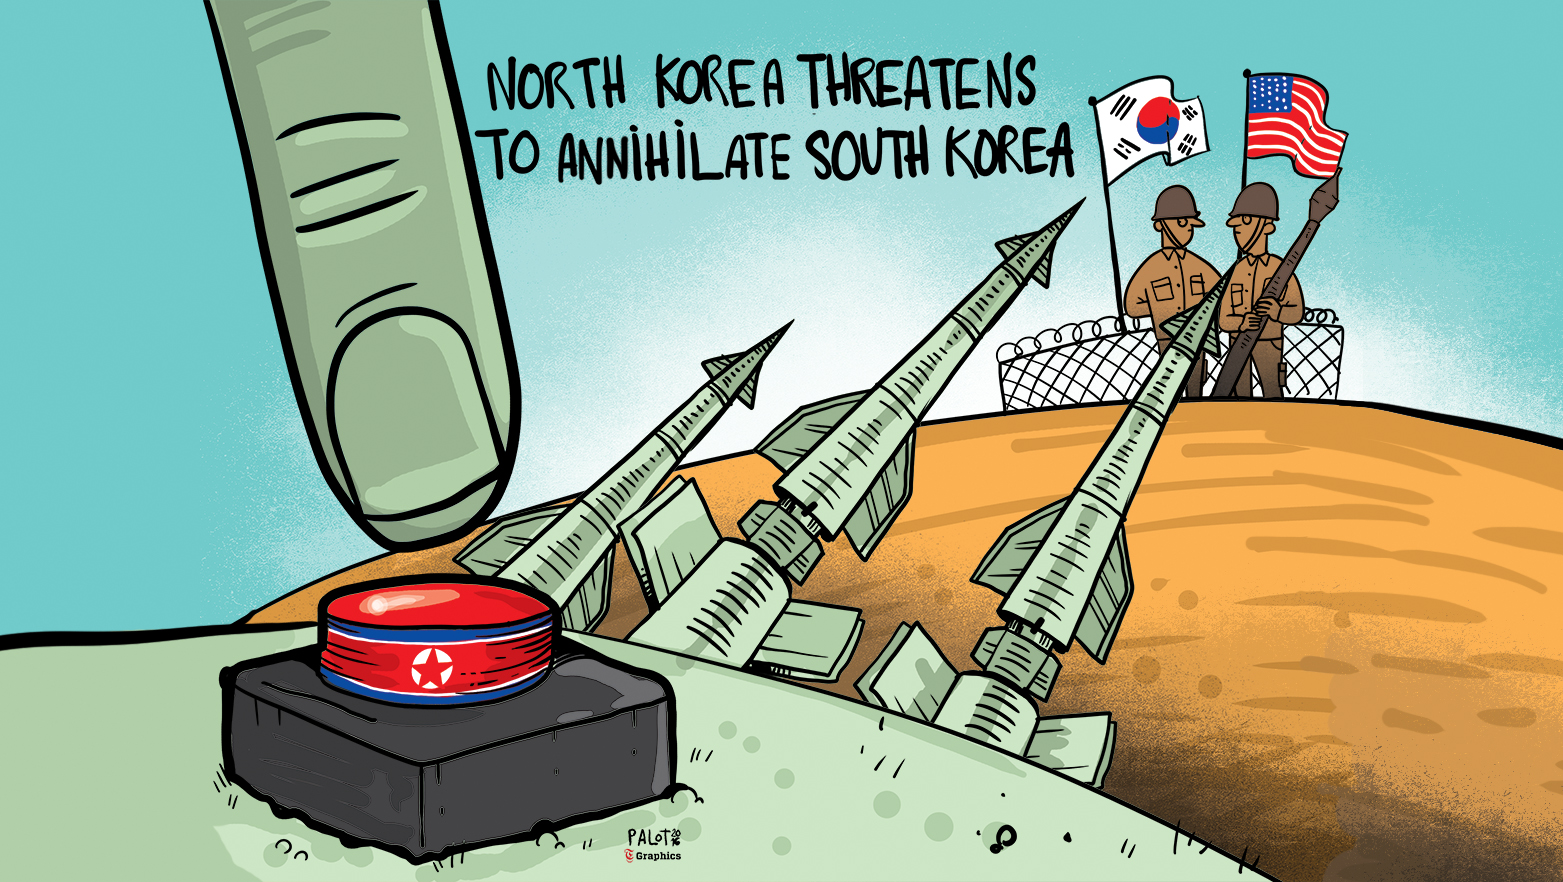 North Korea threatens to annihilate South Korea